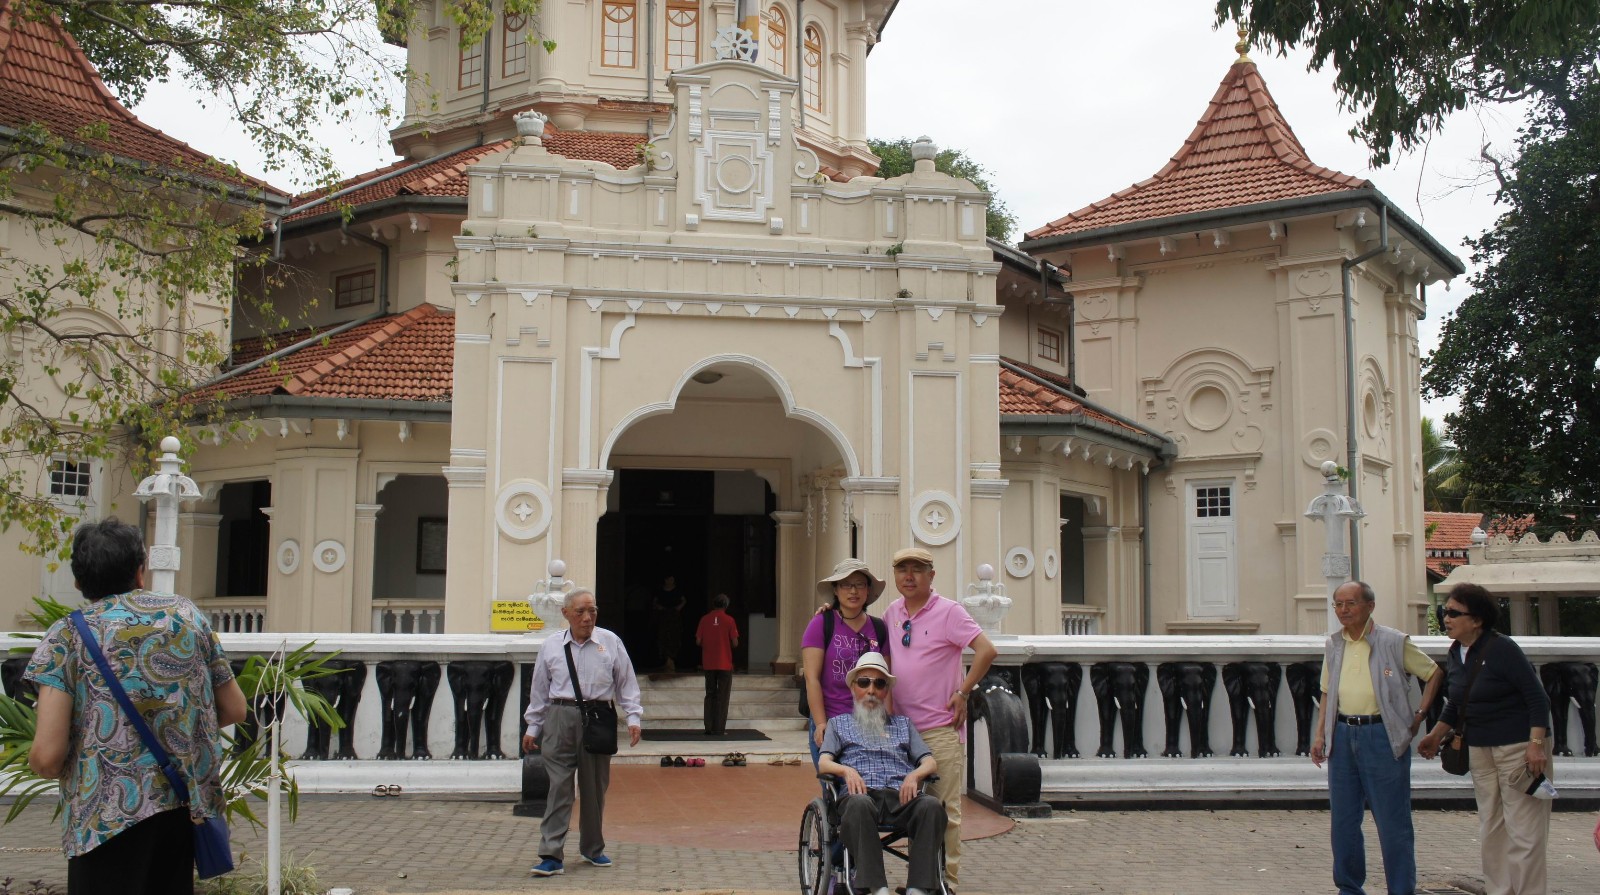 88岁的毕可鑫先生和儿子毕放世、儿媳韩晓晓在科伦坡游览.jpg